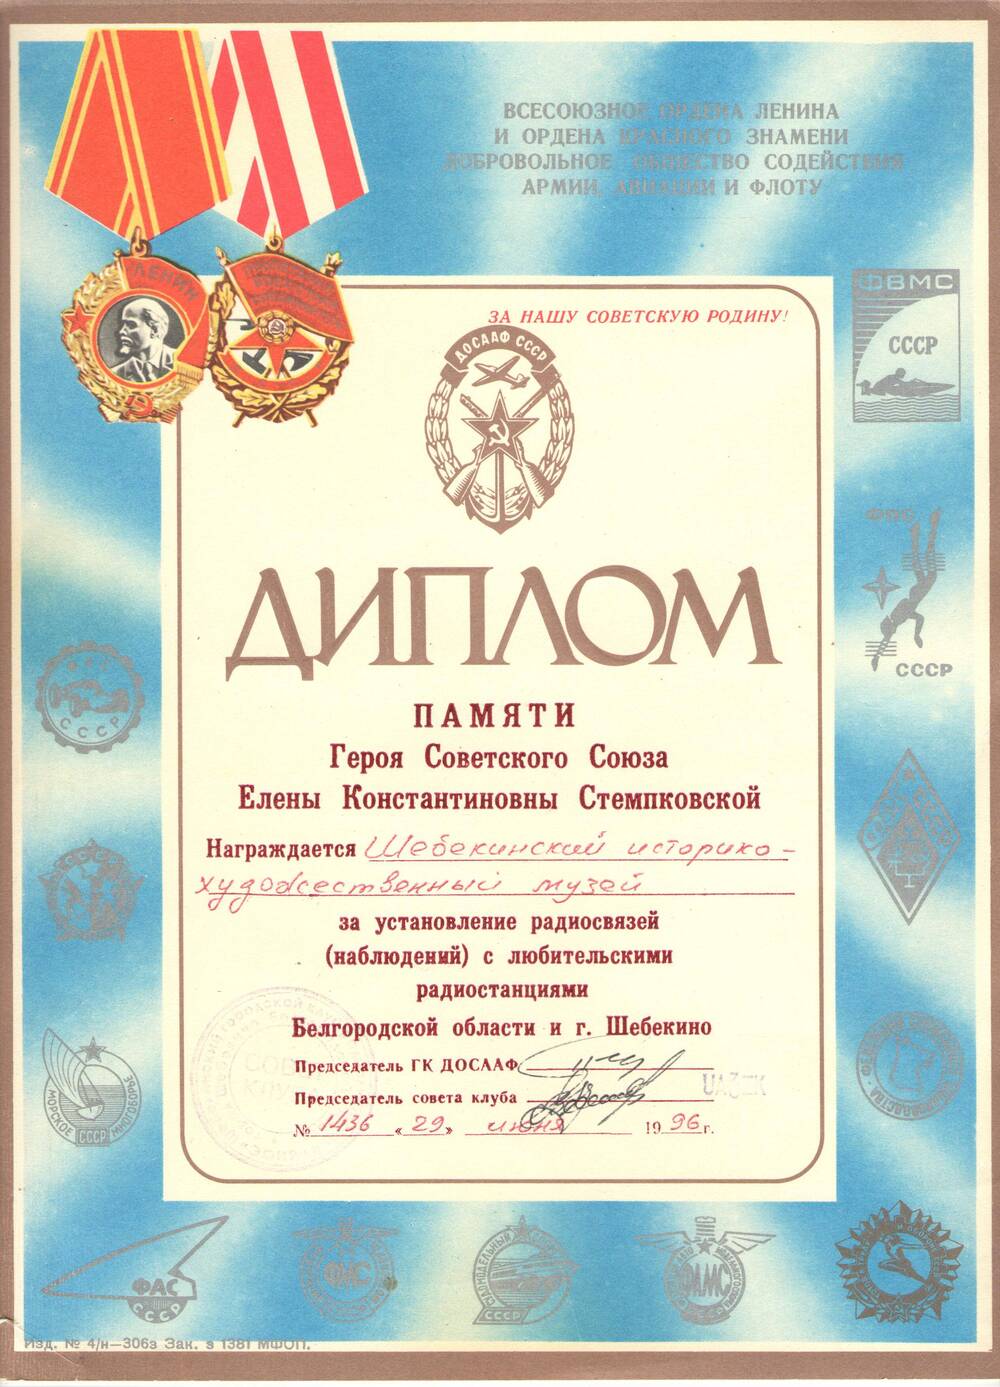 Диплом Шебекинскому историко-художественному музею за установление радиосвязей (наблюдений) с любительскими радиостанциями.